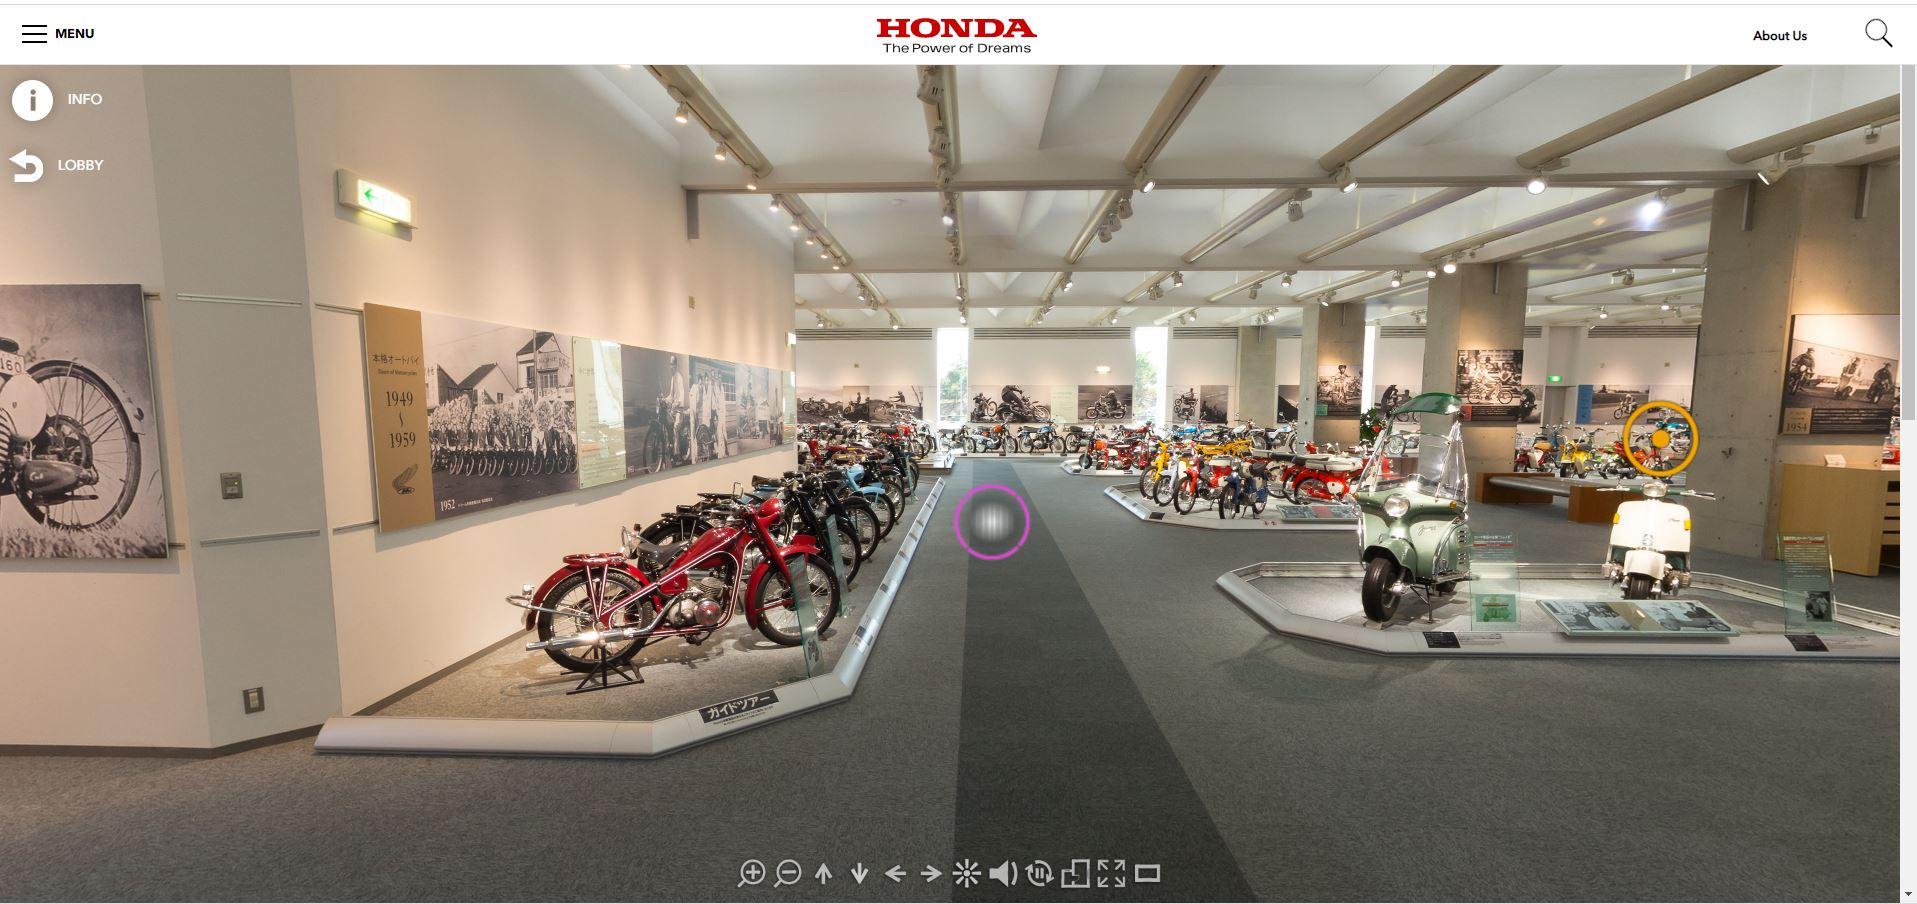 Passeio virtual pelo museu da Honda